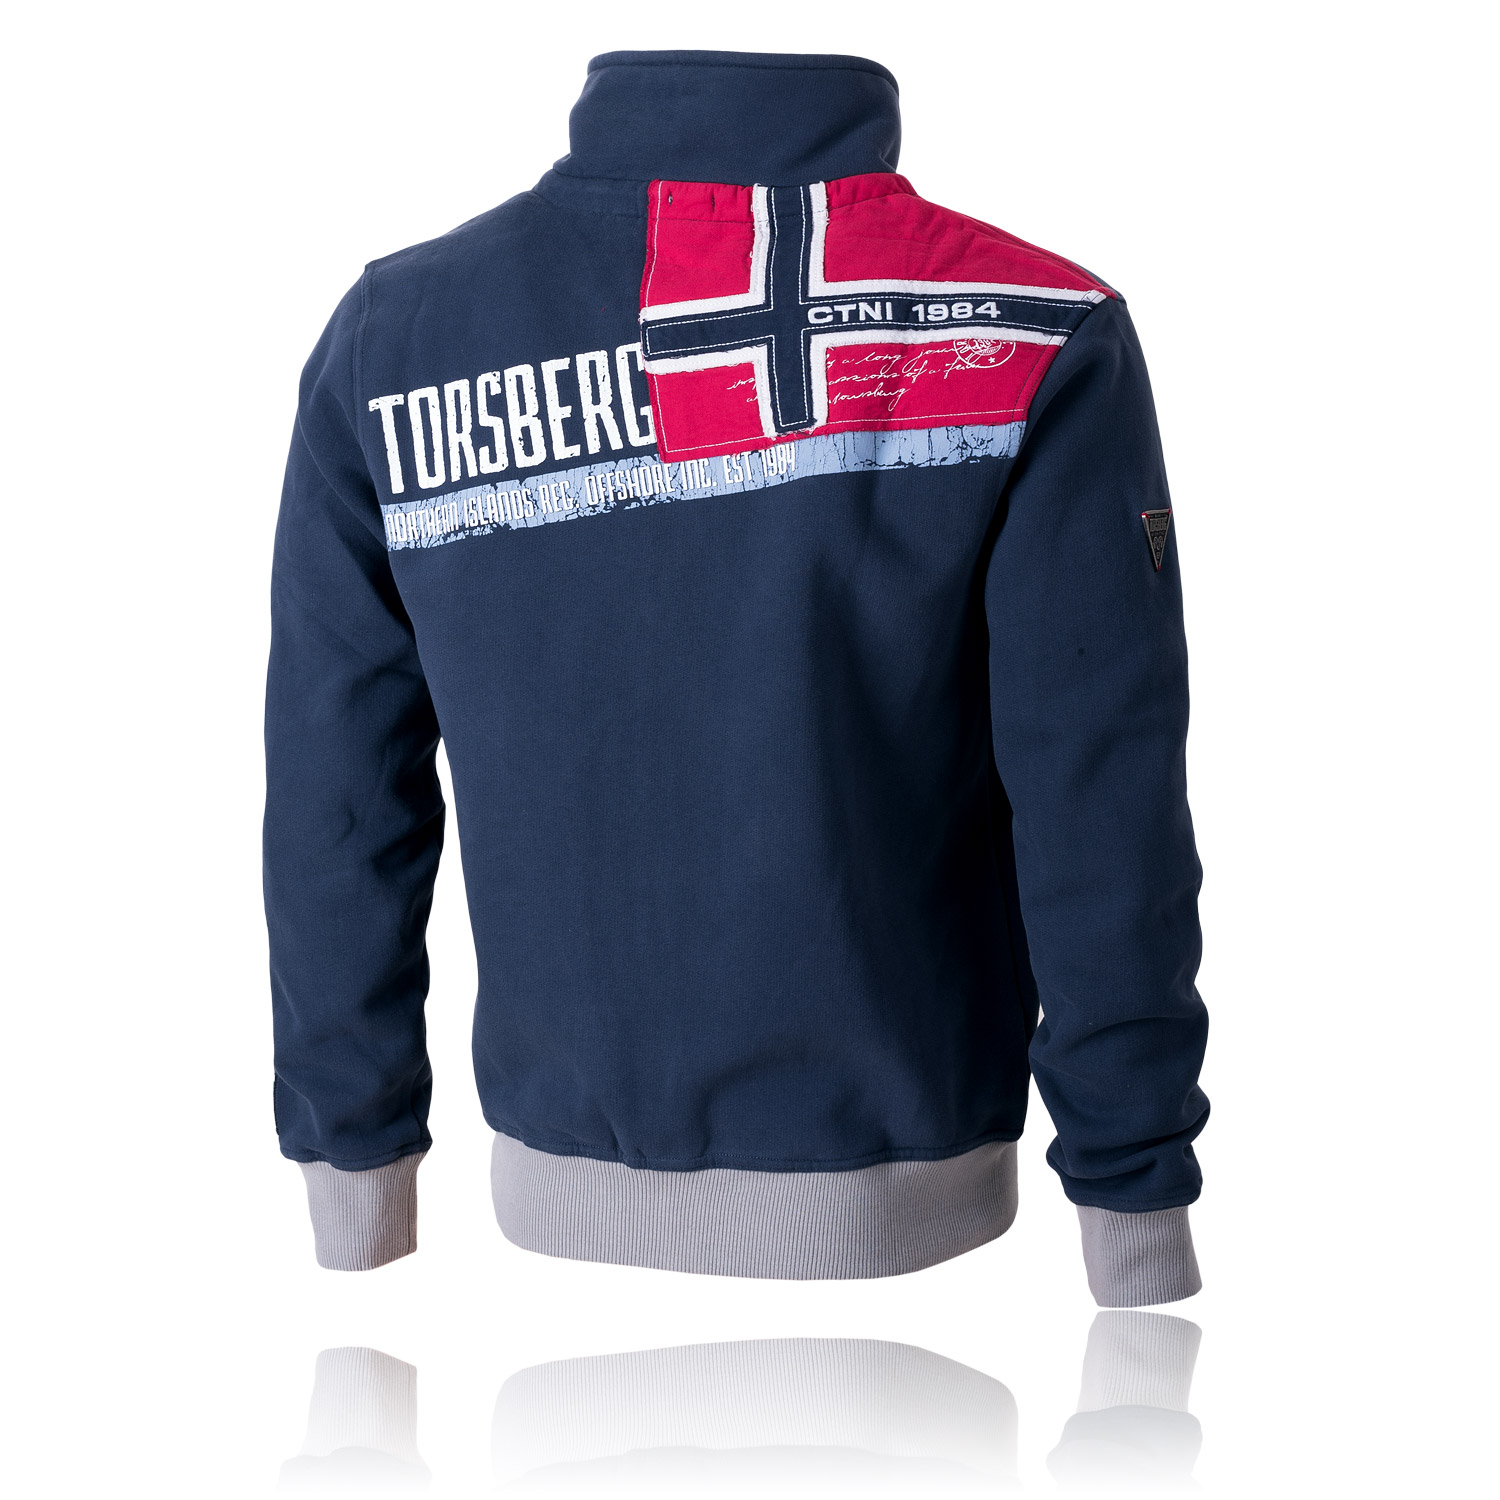 Carl Torsberg Northern Islands Zip Jacket